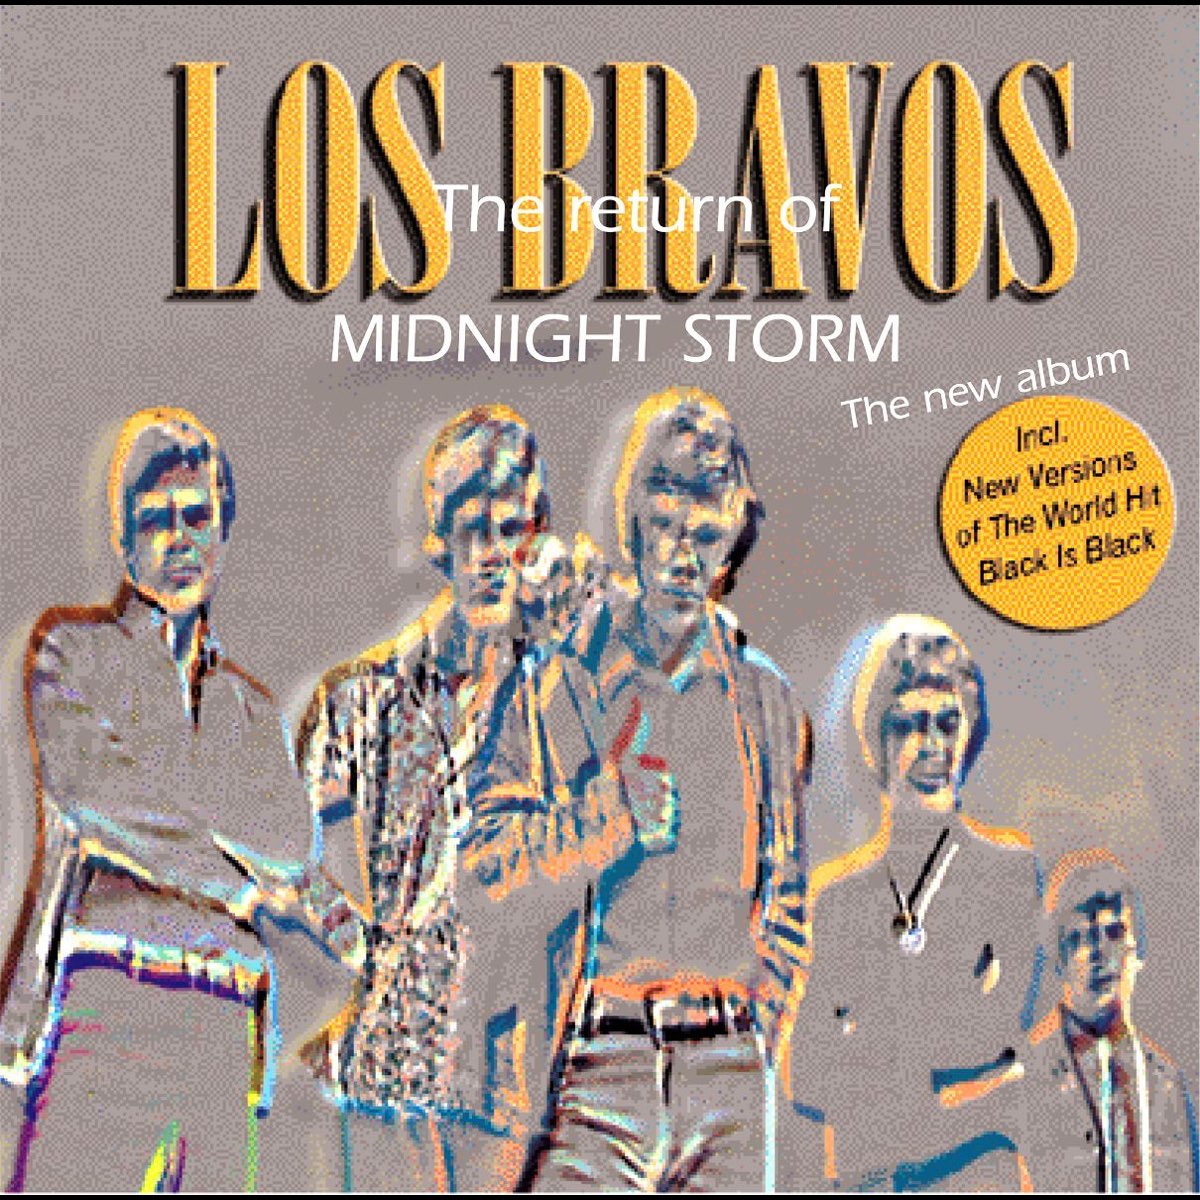 Los Bravos albums. Los Bravos Black is Black. Never, never, never los Bravos. Los Bravos album bring a little Lovin'.